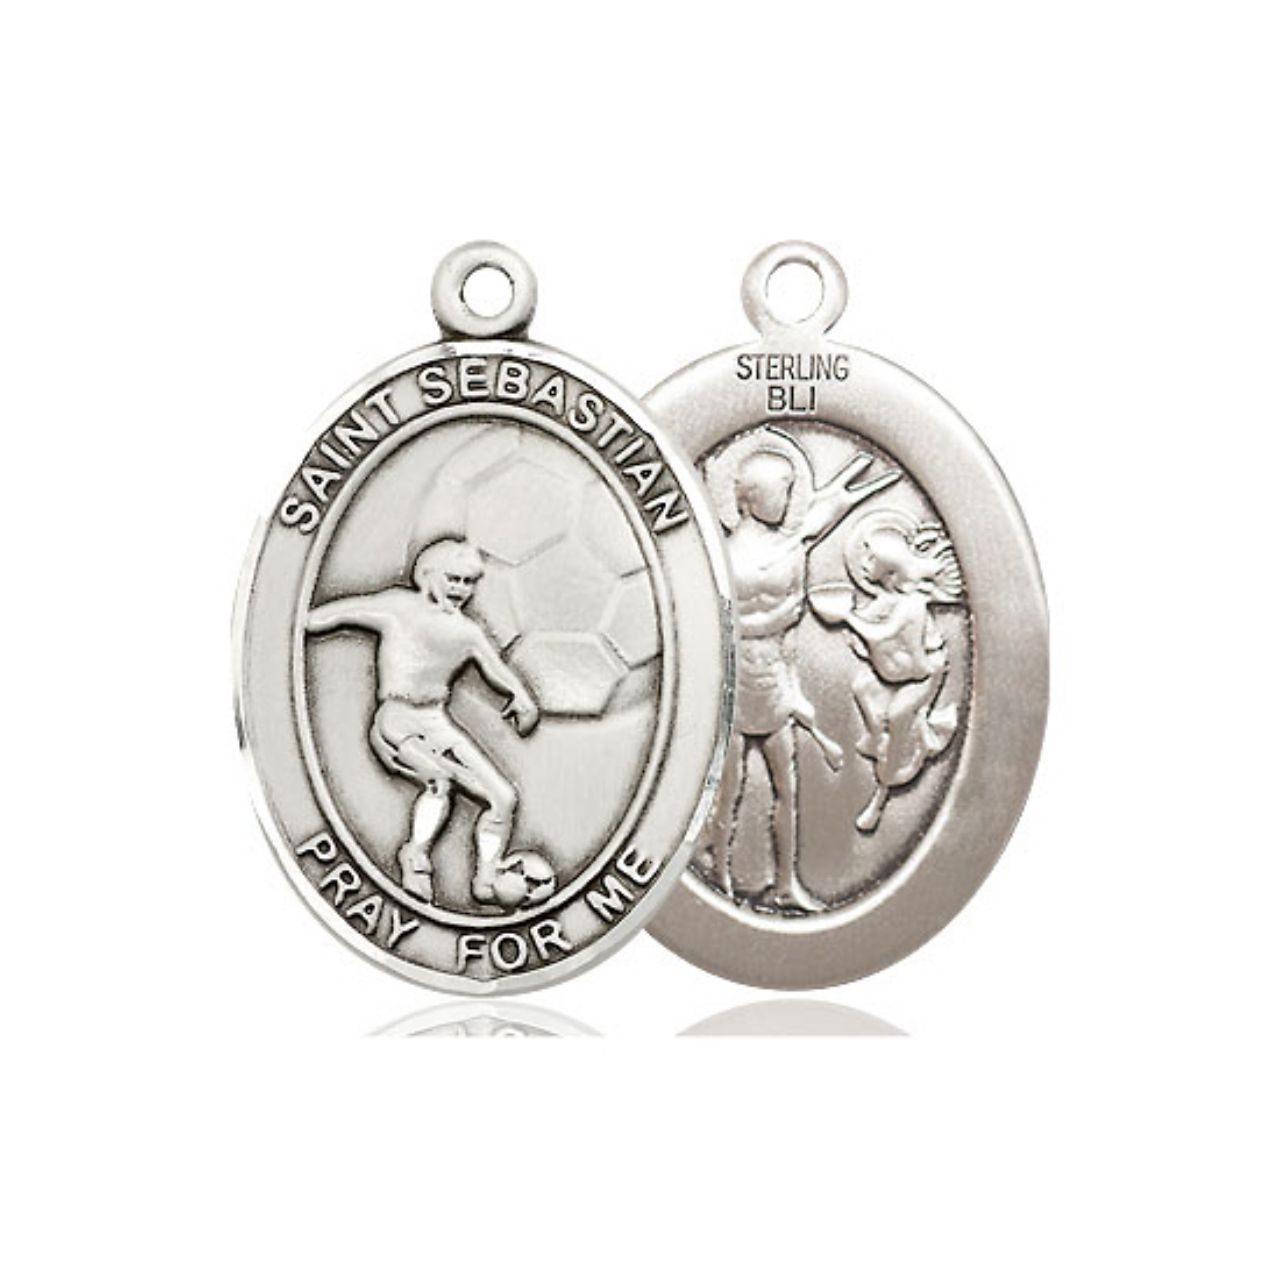 St. Sebastian Men's Soccer Medal - Sterling Silver Oval Pendant (2 Sizes)